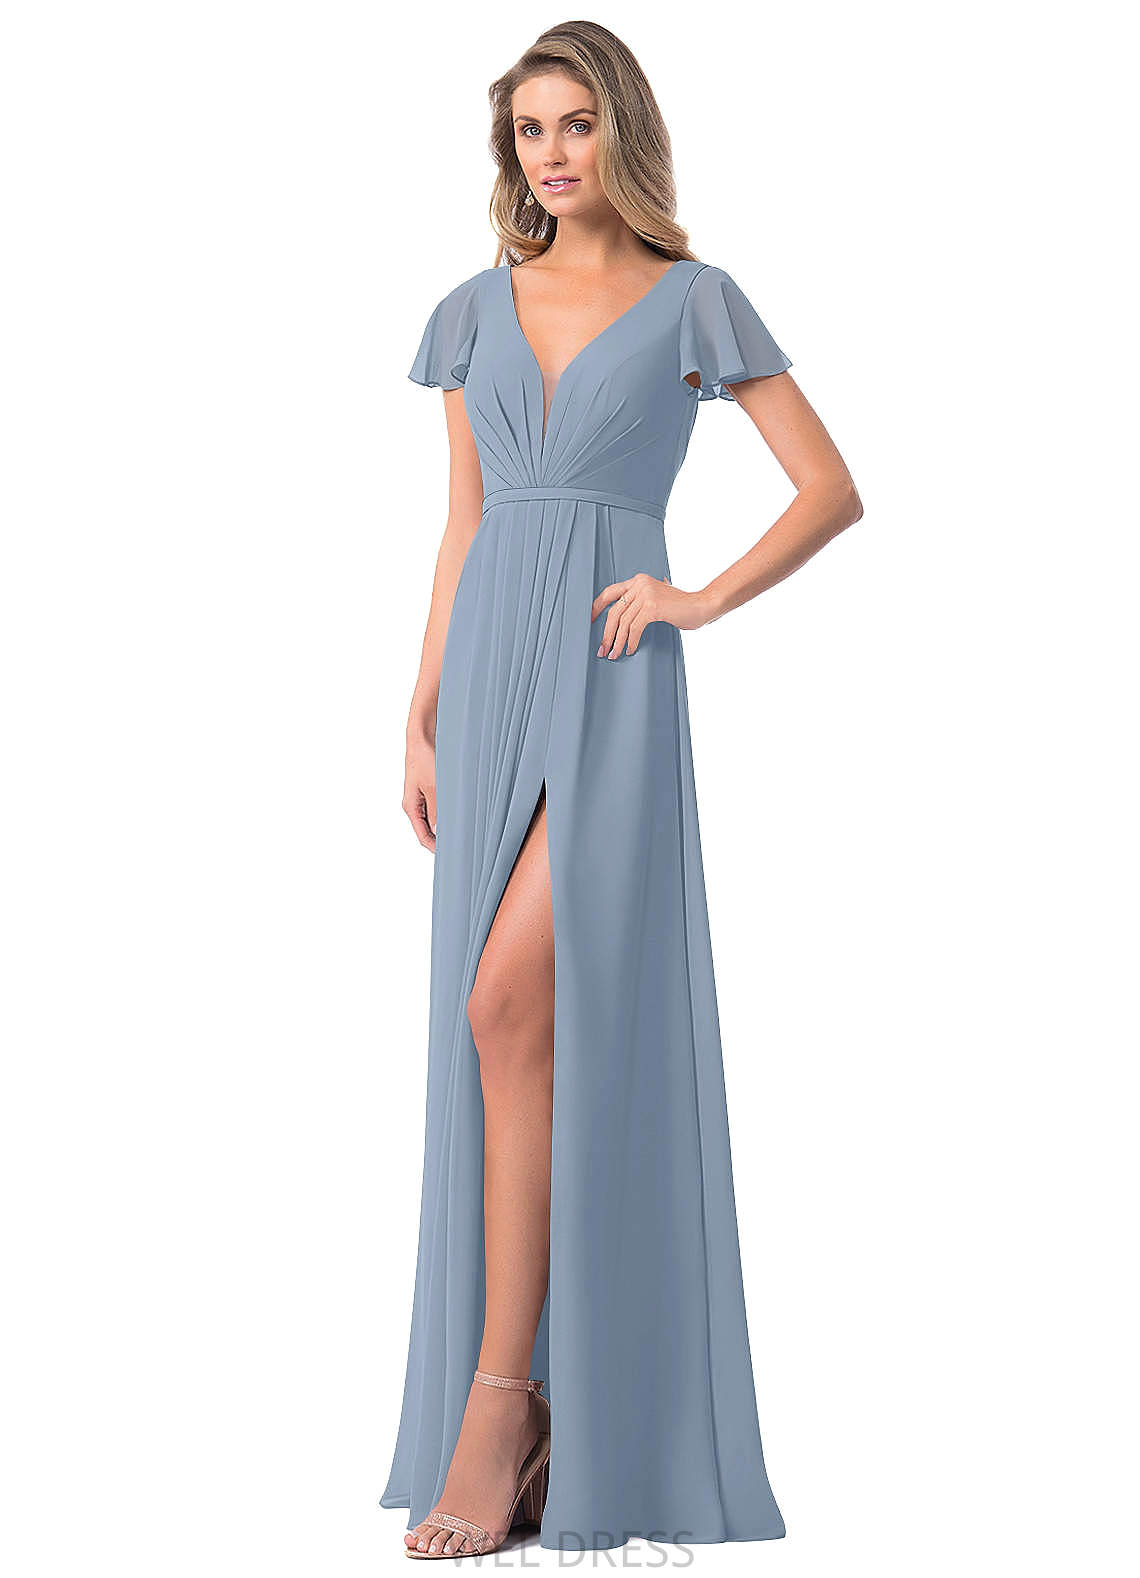 Norma V-Neck Sleeveless Floor Length Natural Waist A-Line/Princess Bridesmaid Dresses